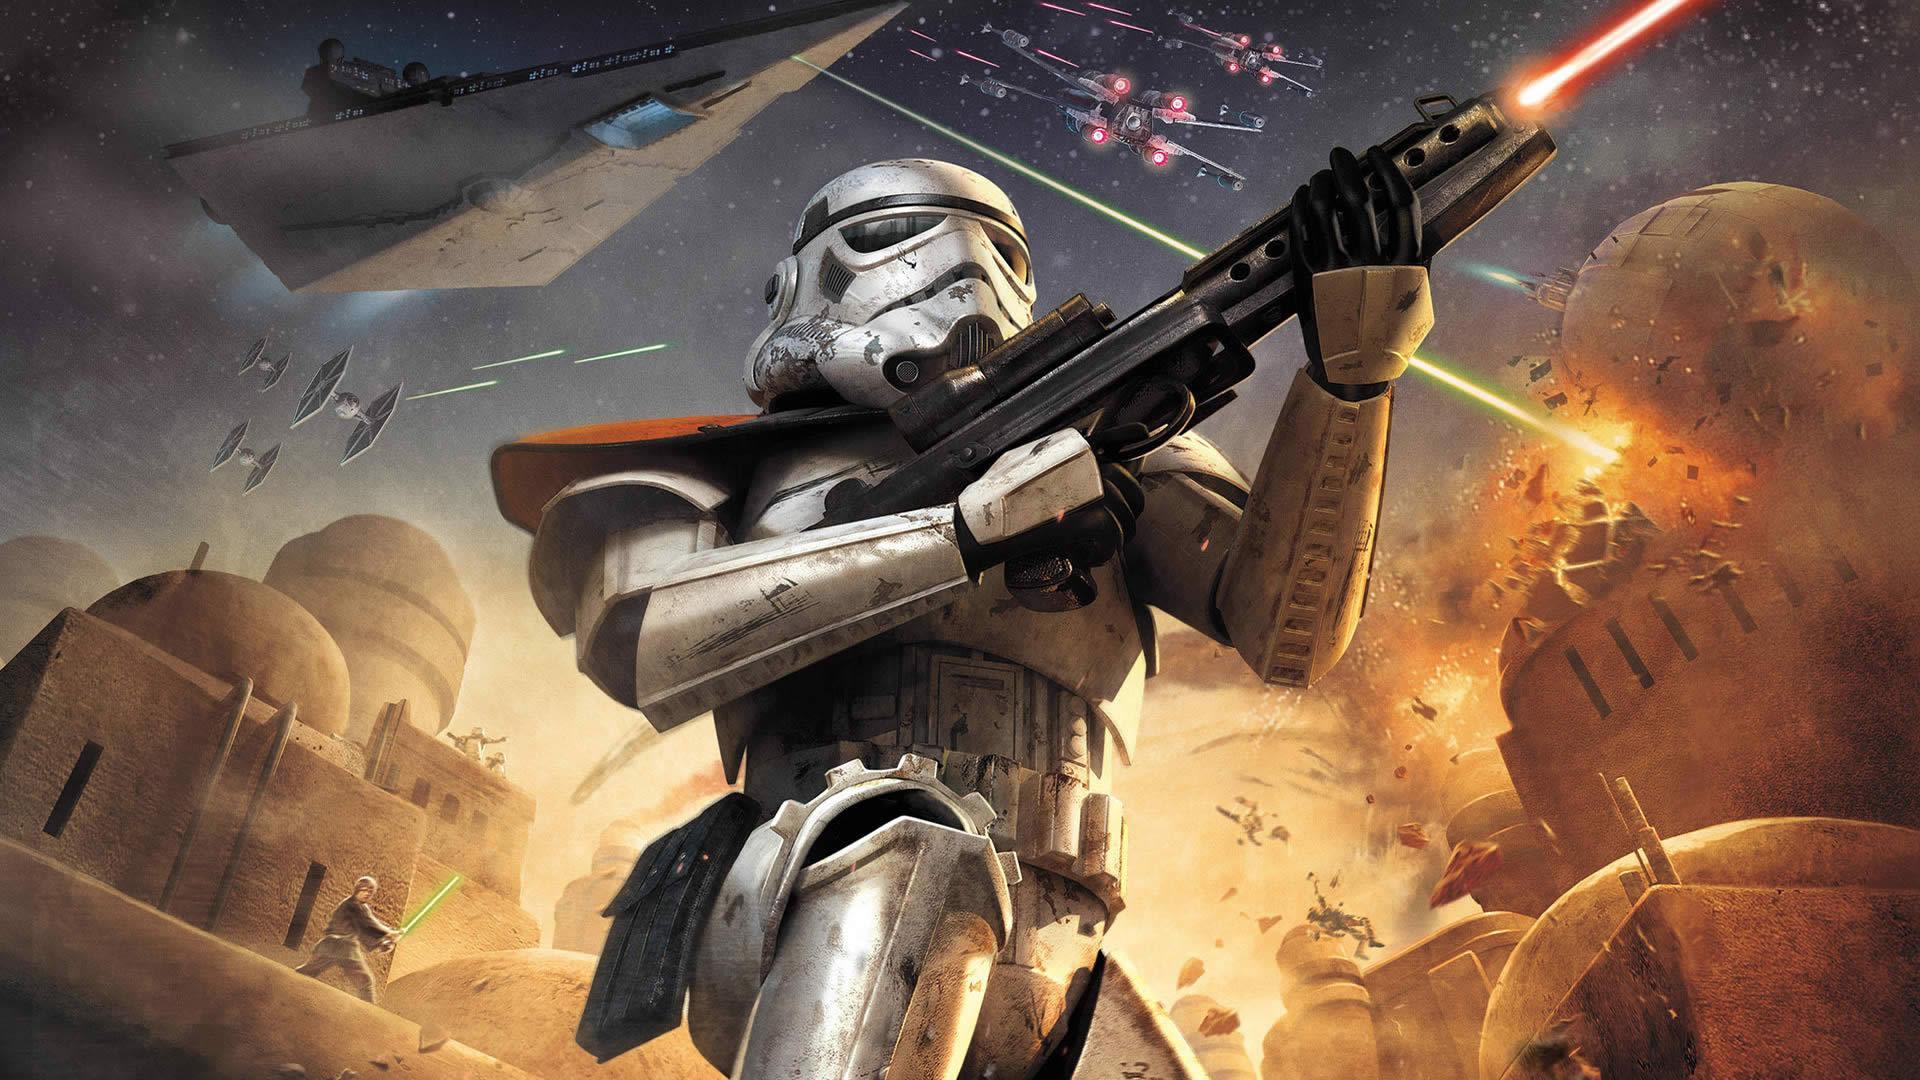 Stormtrooper In Battle HD Wallpaperx1080